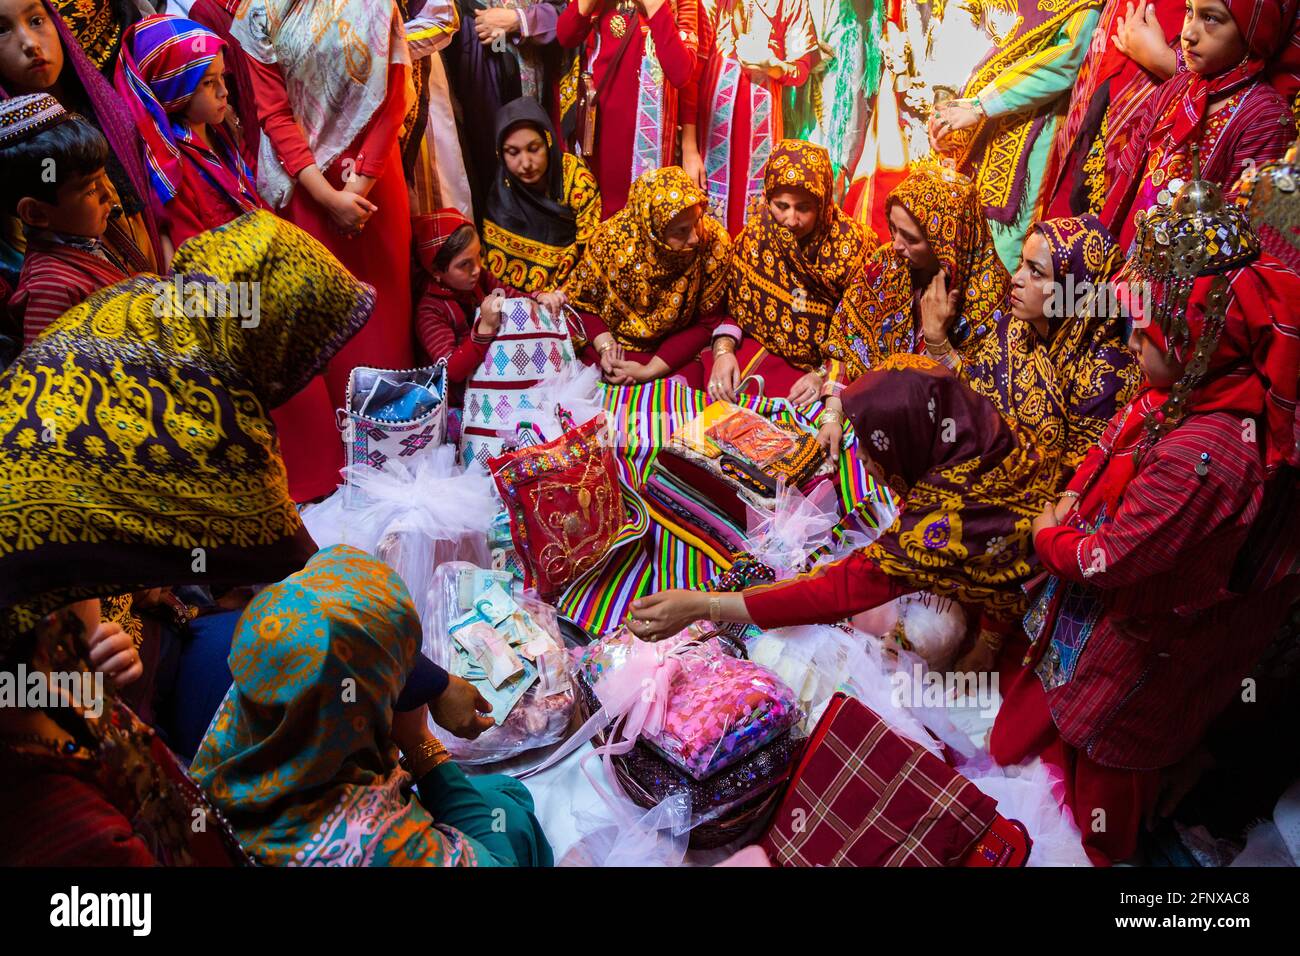 Matrimonio tradizionale / Turkmeni iraniani sono un ramo di turkmiti che vivono principalmente nelle regioni settentrionali e nordorientali dell'Iran. Foto Stock